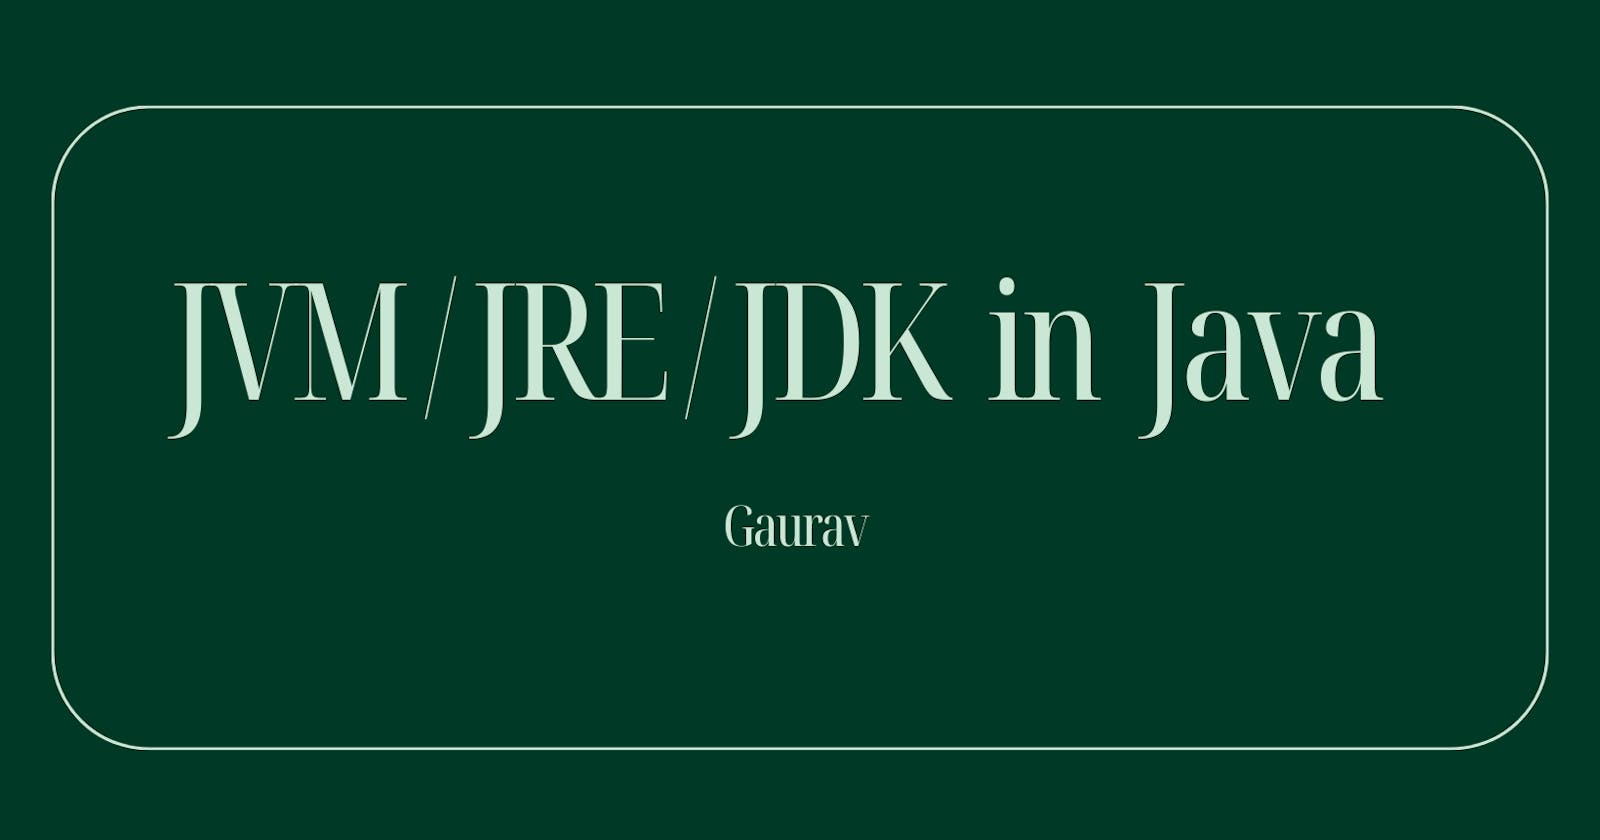 Understanding Jvm / Jre / Jdk  in Java